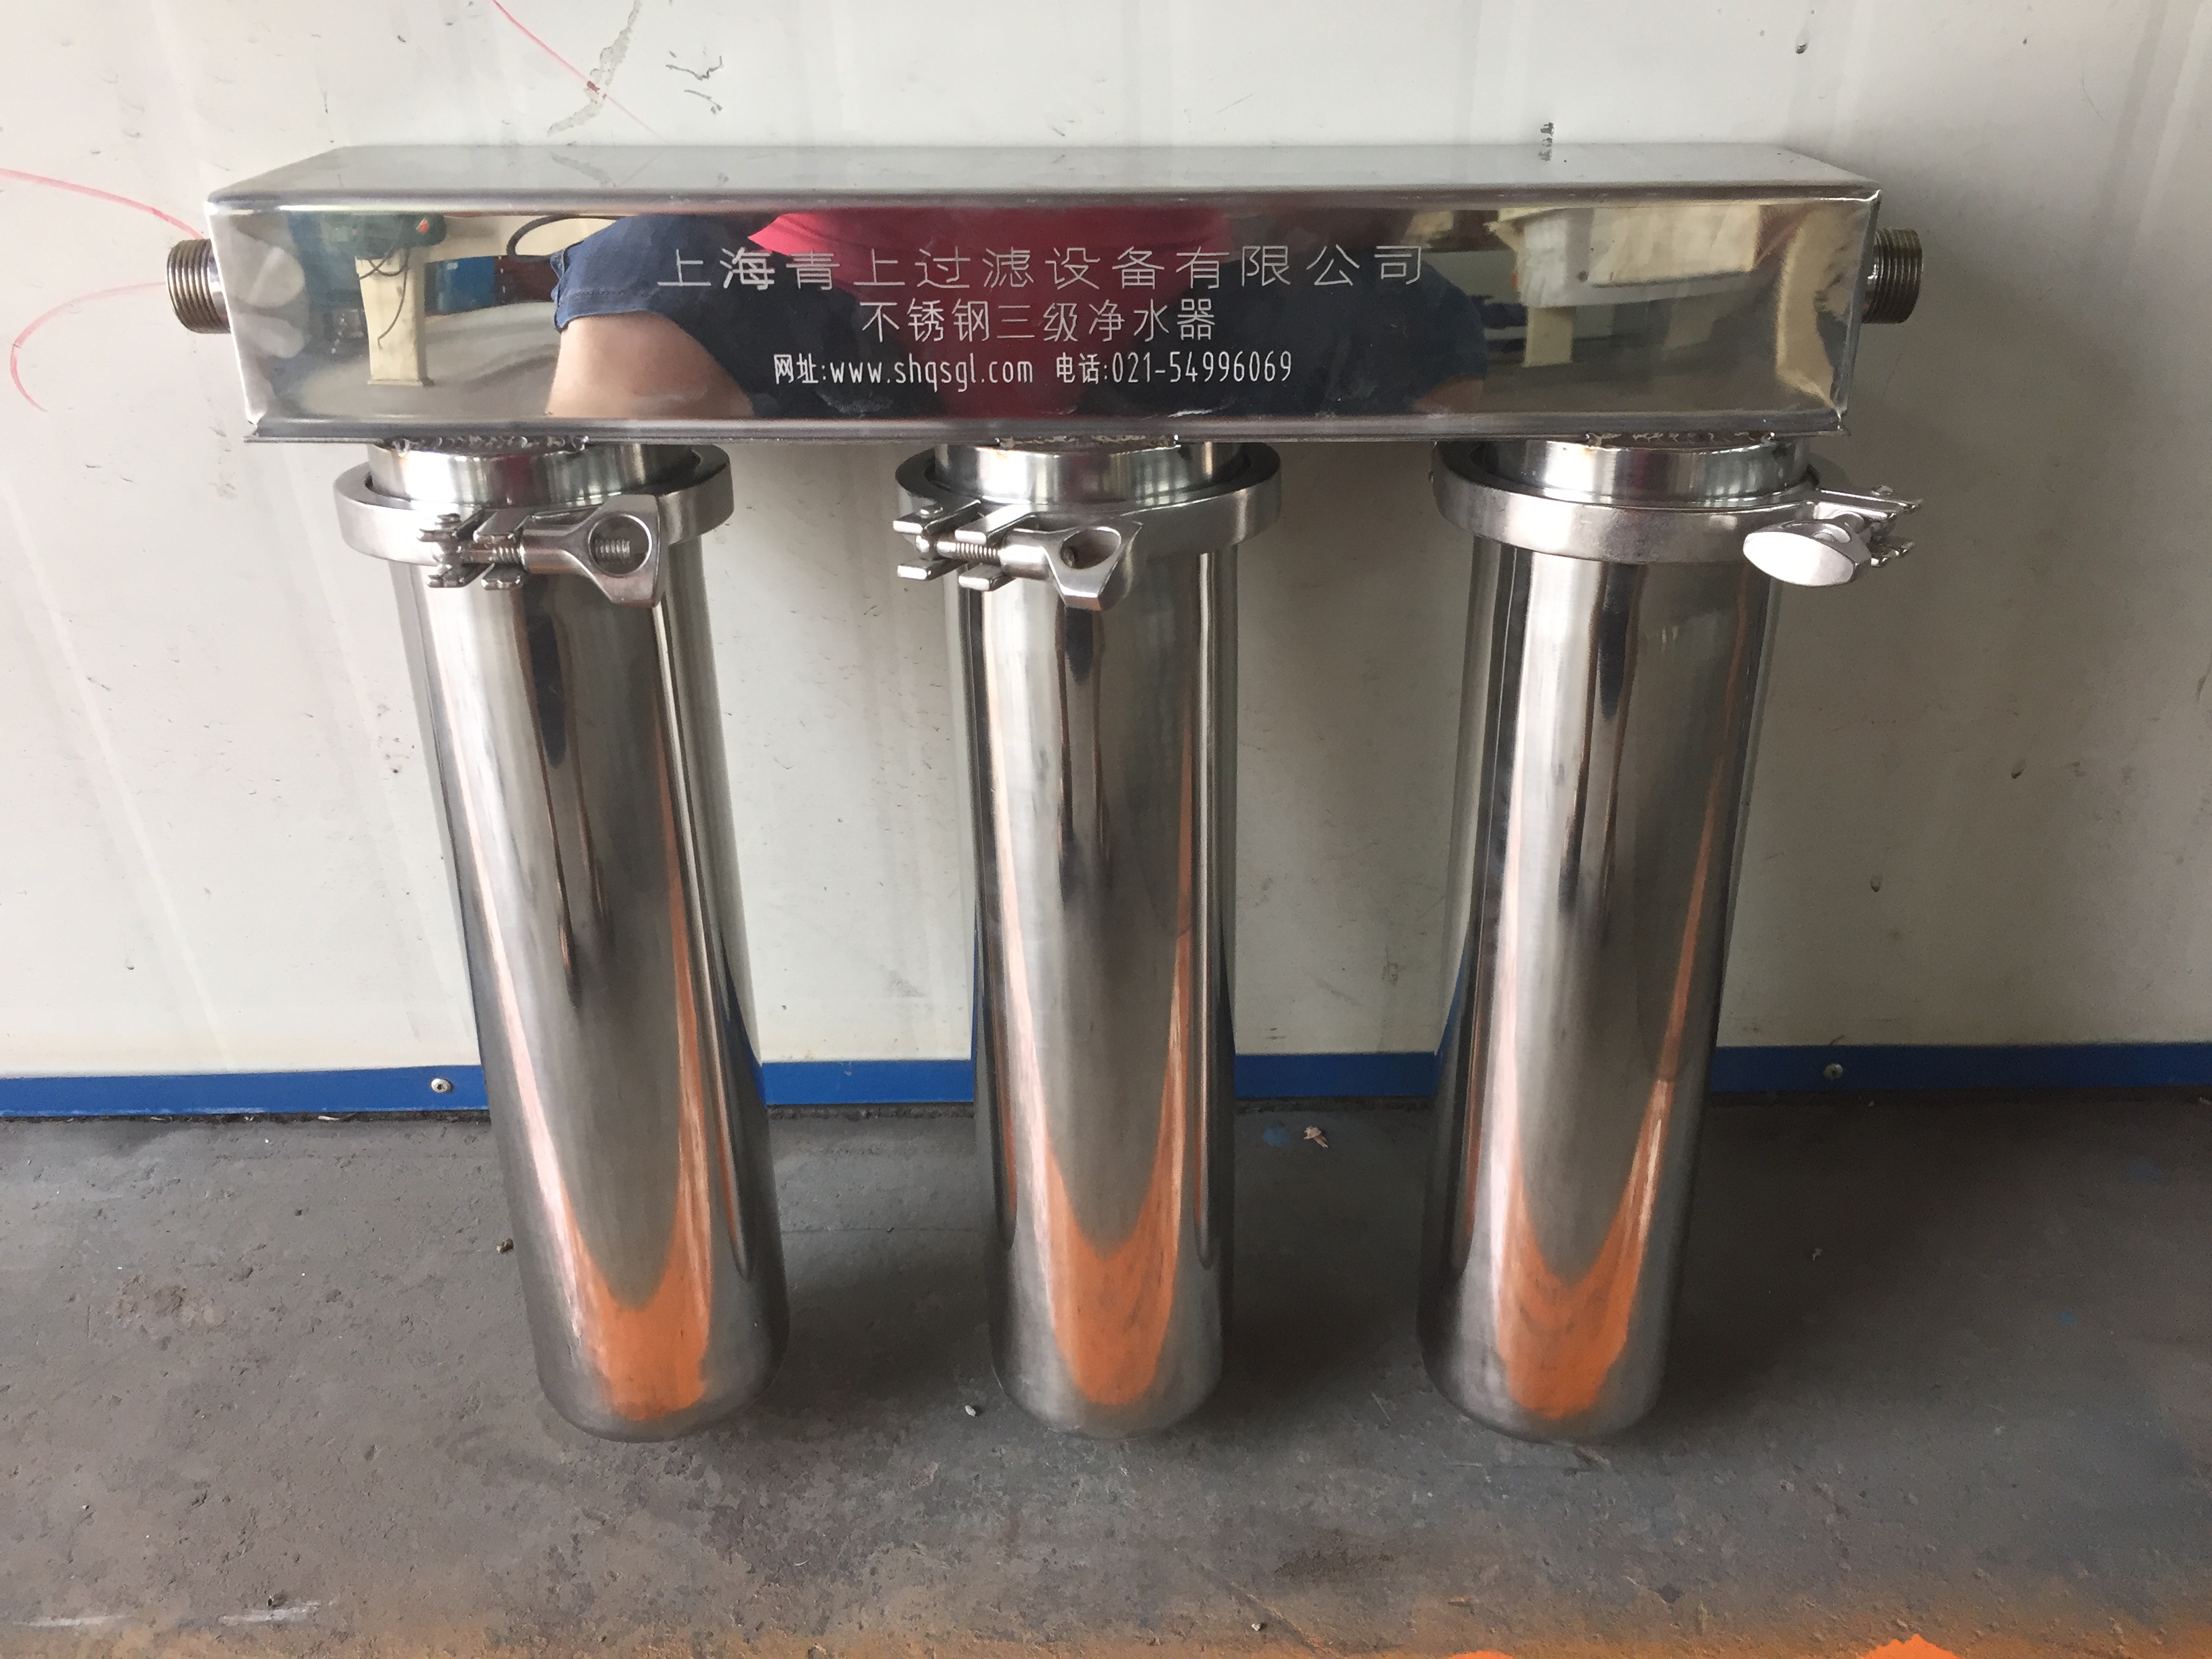 上海青上过滤设备供应家用自来水过滤器厂家批发、直销